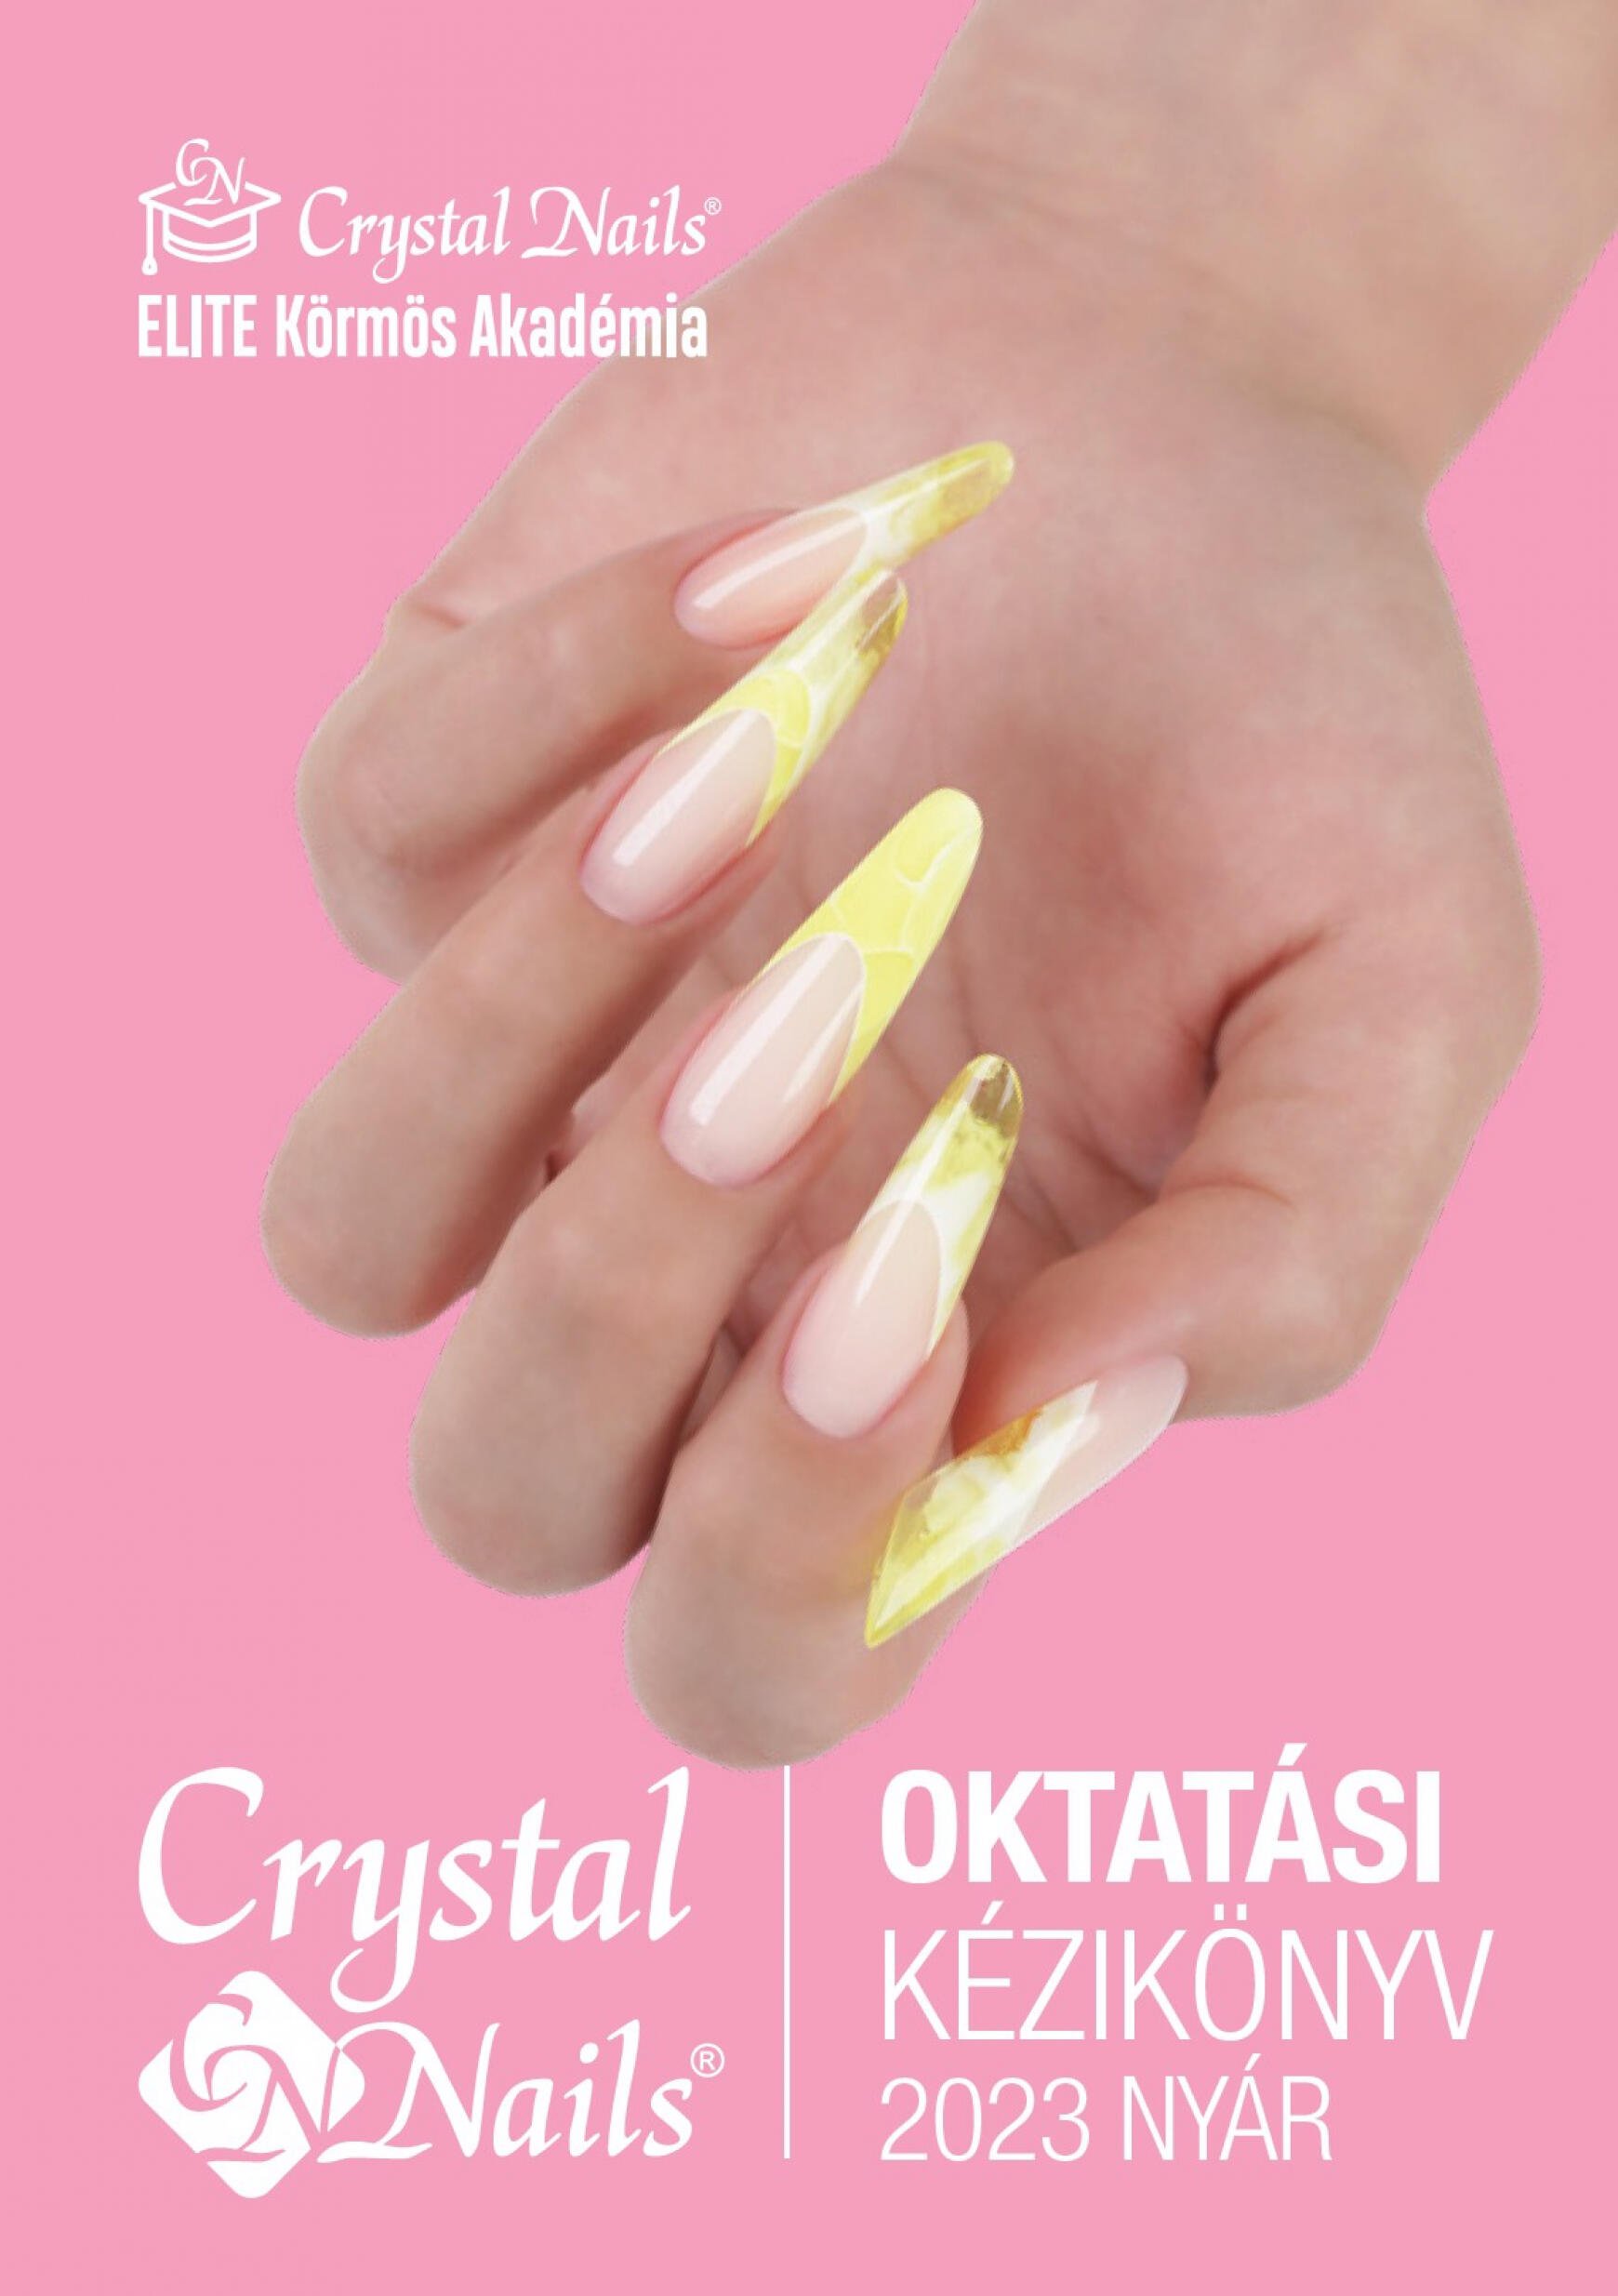 crystal-nails - Crystal Nails Oktatási kézikönyv 2023 nyár